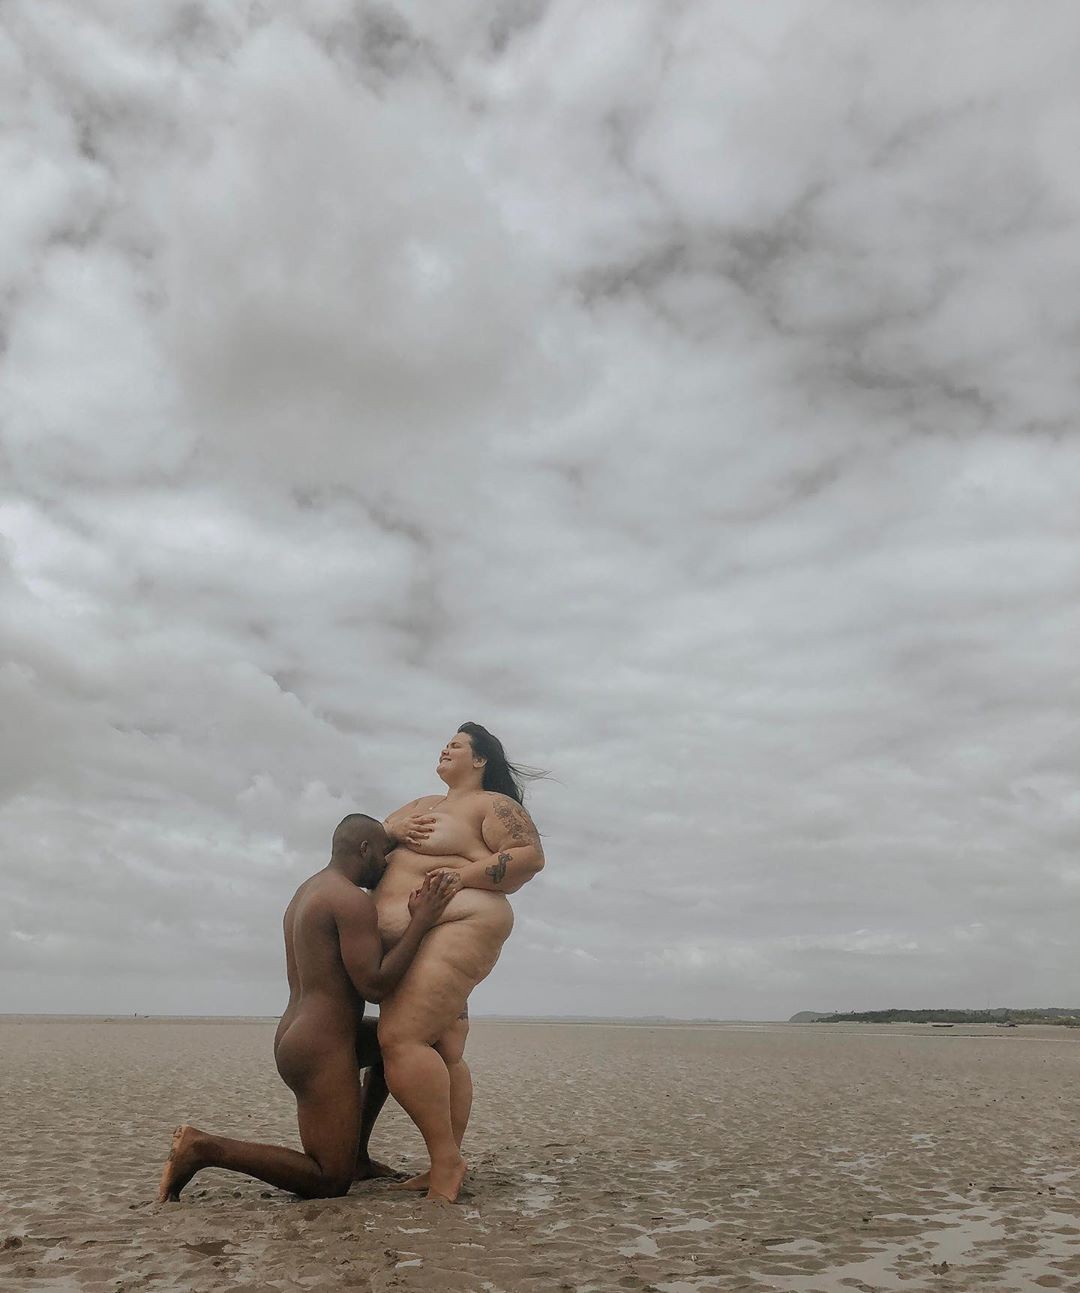 Thais Carla posta clique nu ao lado do marido (Foto: Reprodução/Instagram)